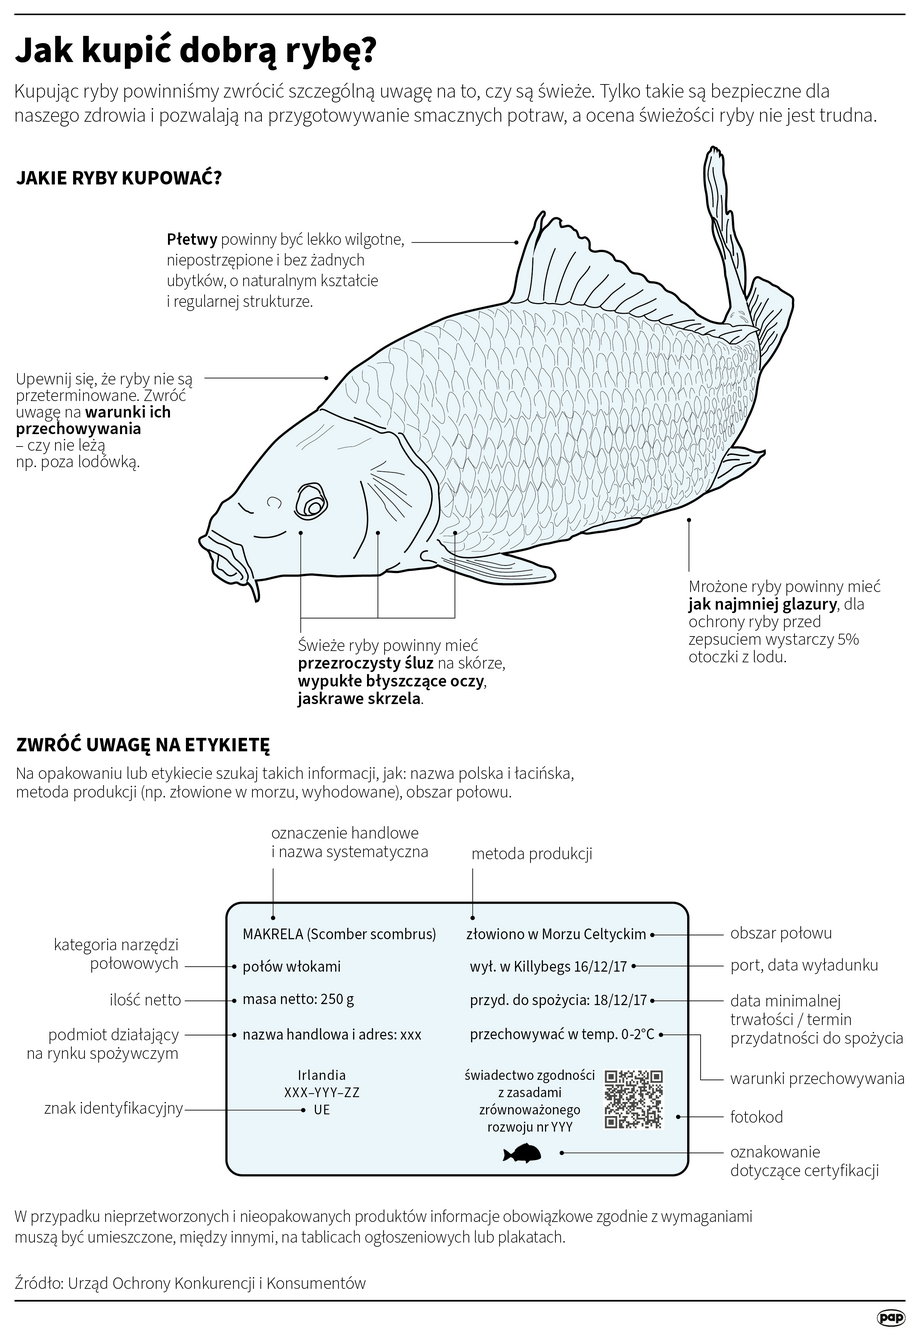 Przy zakupie ryby warto zwrócić uwagę na kilka elementów.